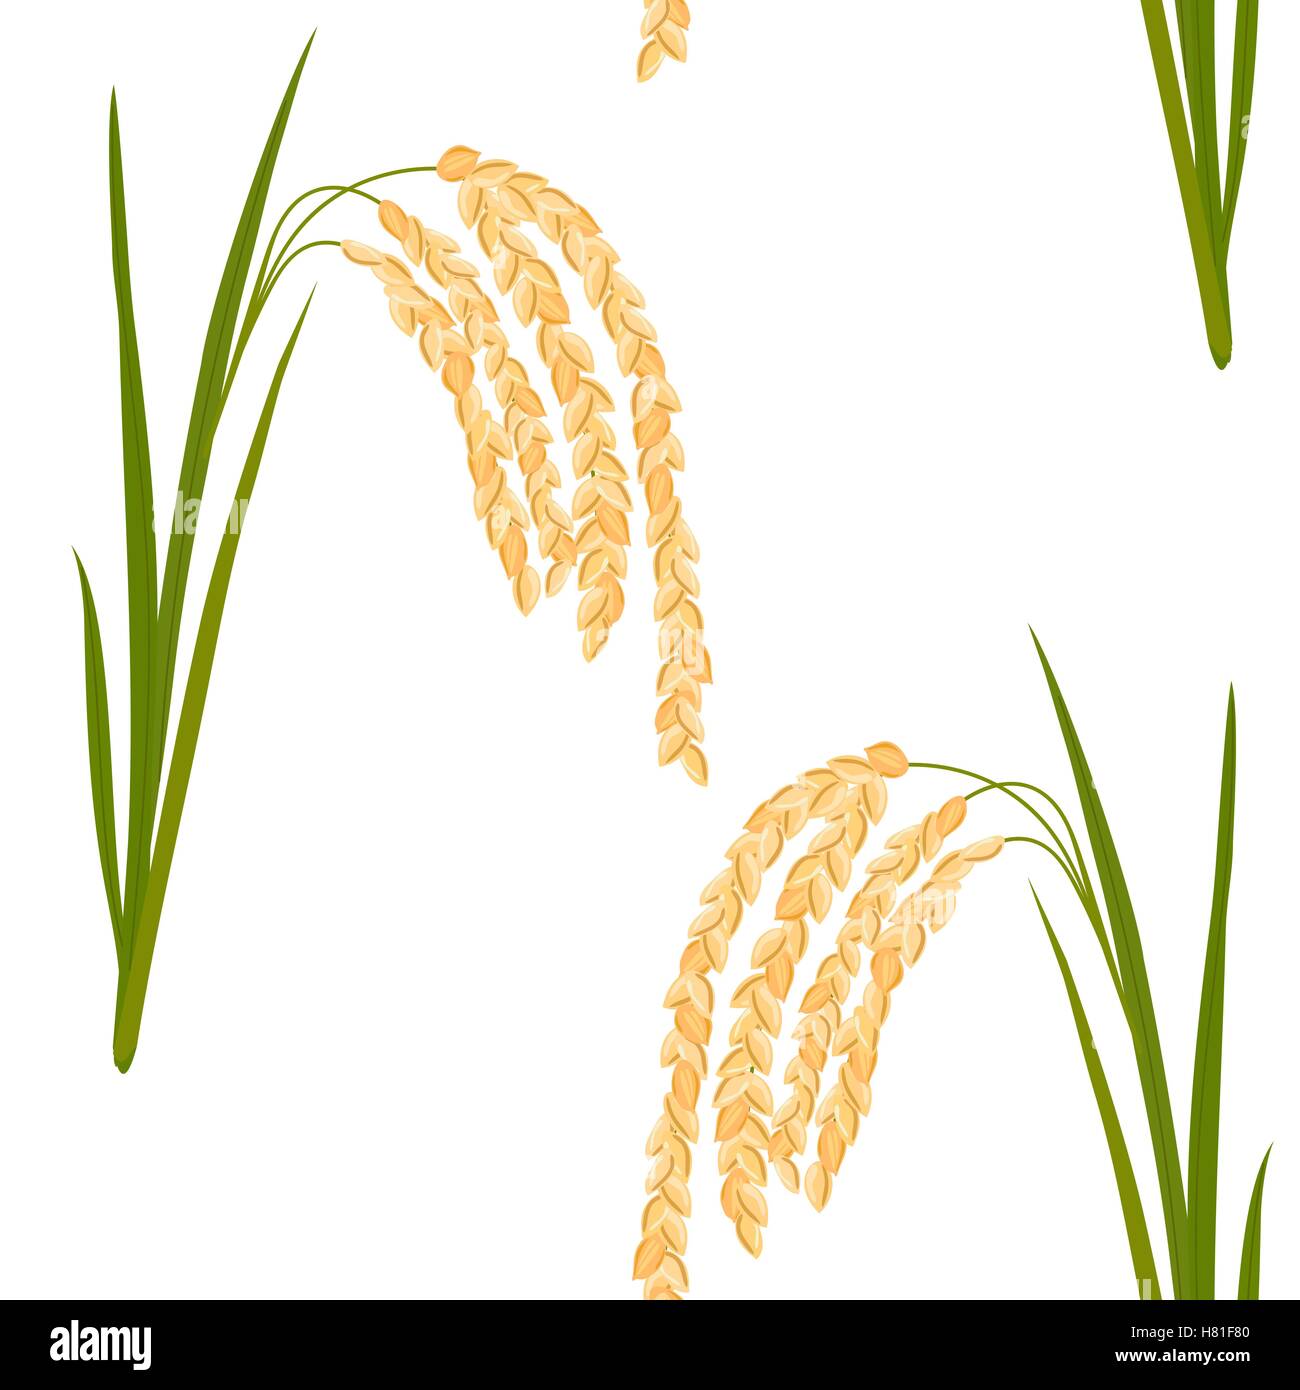 Nahtlose Muster mit Reis. Blätter und Ährchen Reis auf einem weißen Hintergrund. Vektor-Illustration. EPS-10. Stock Vektor